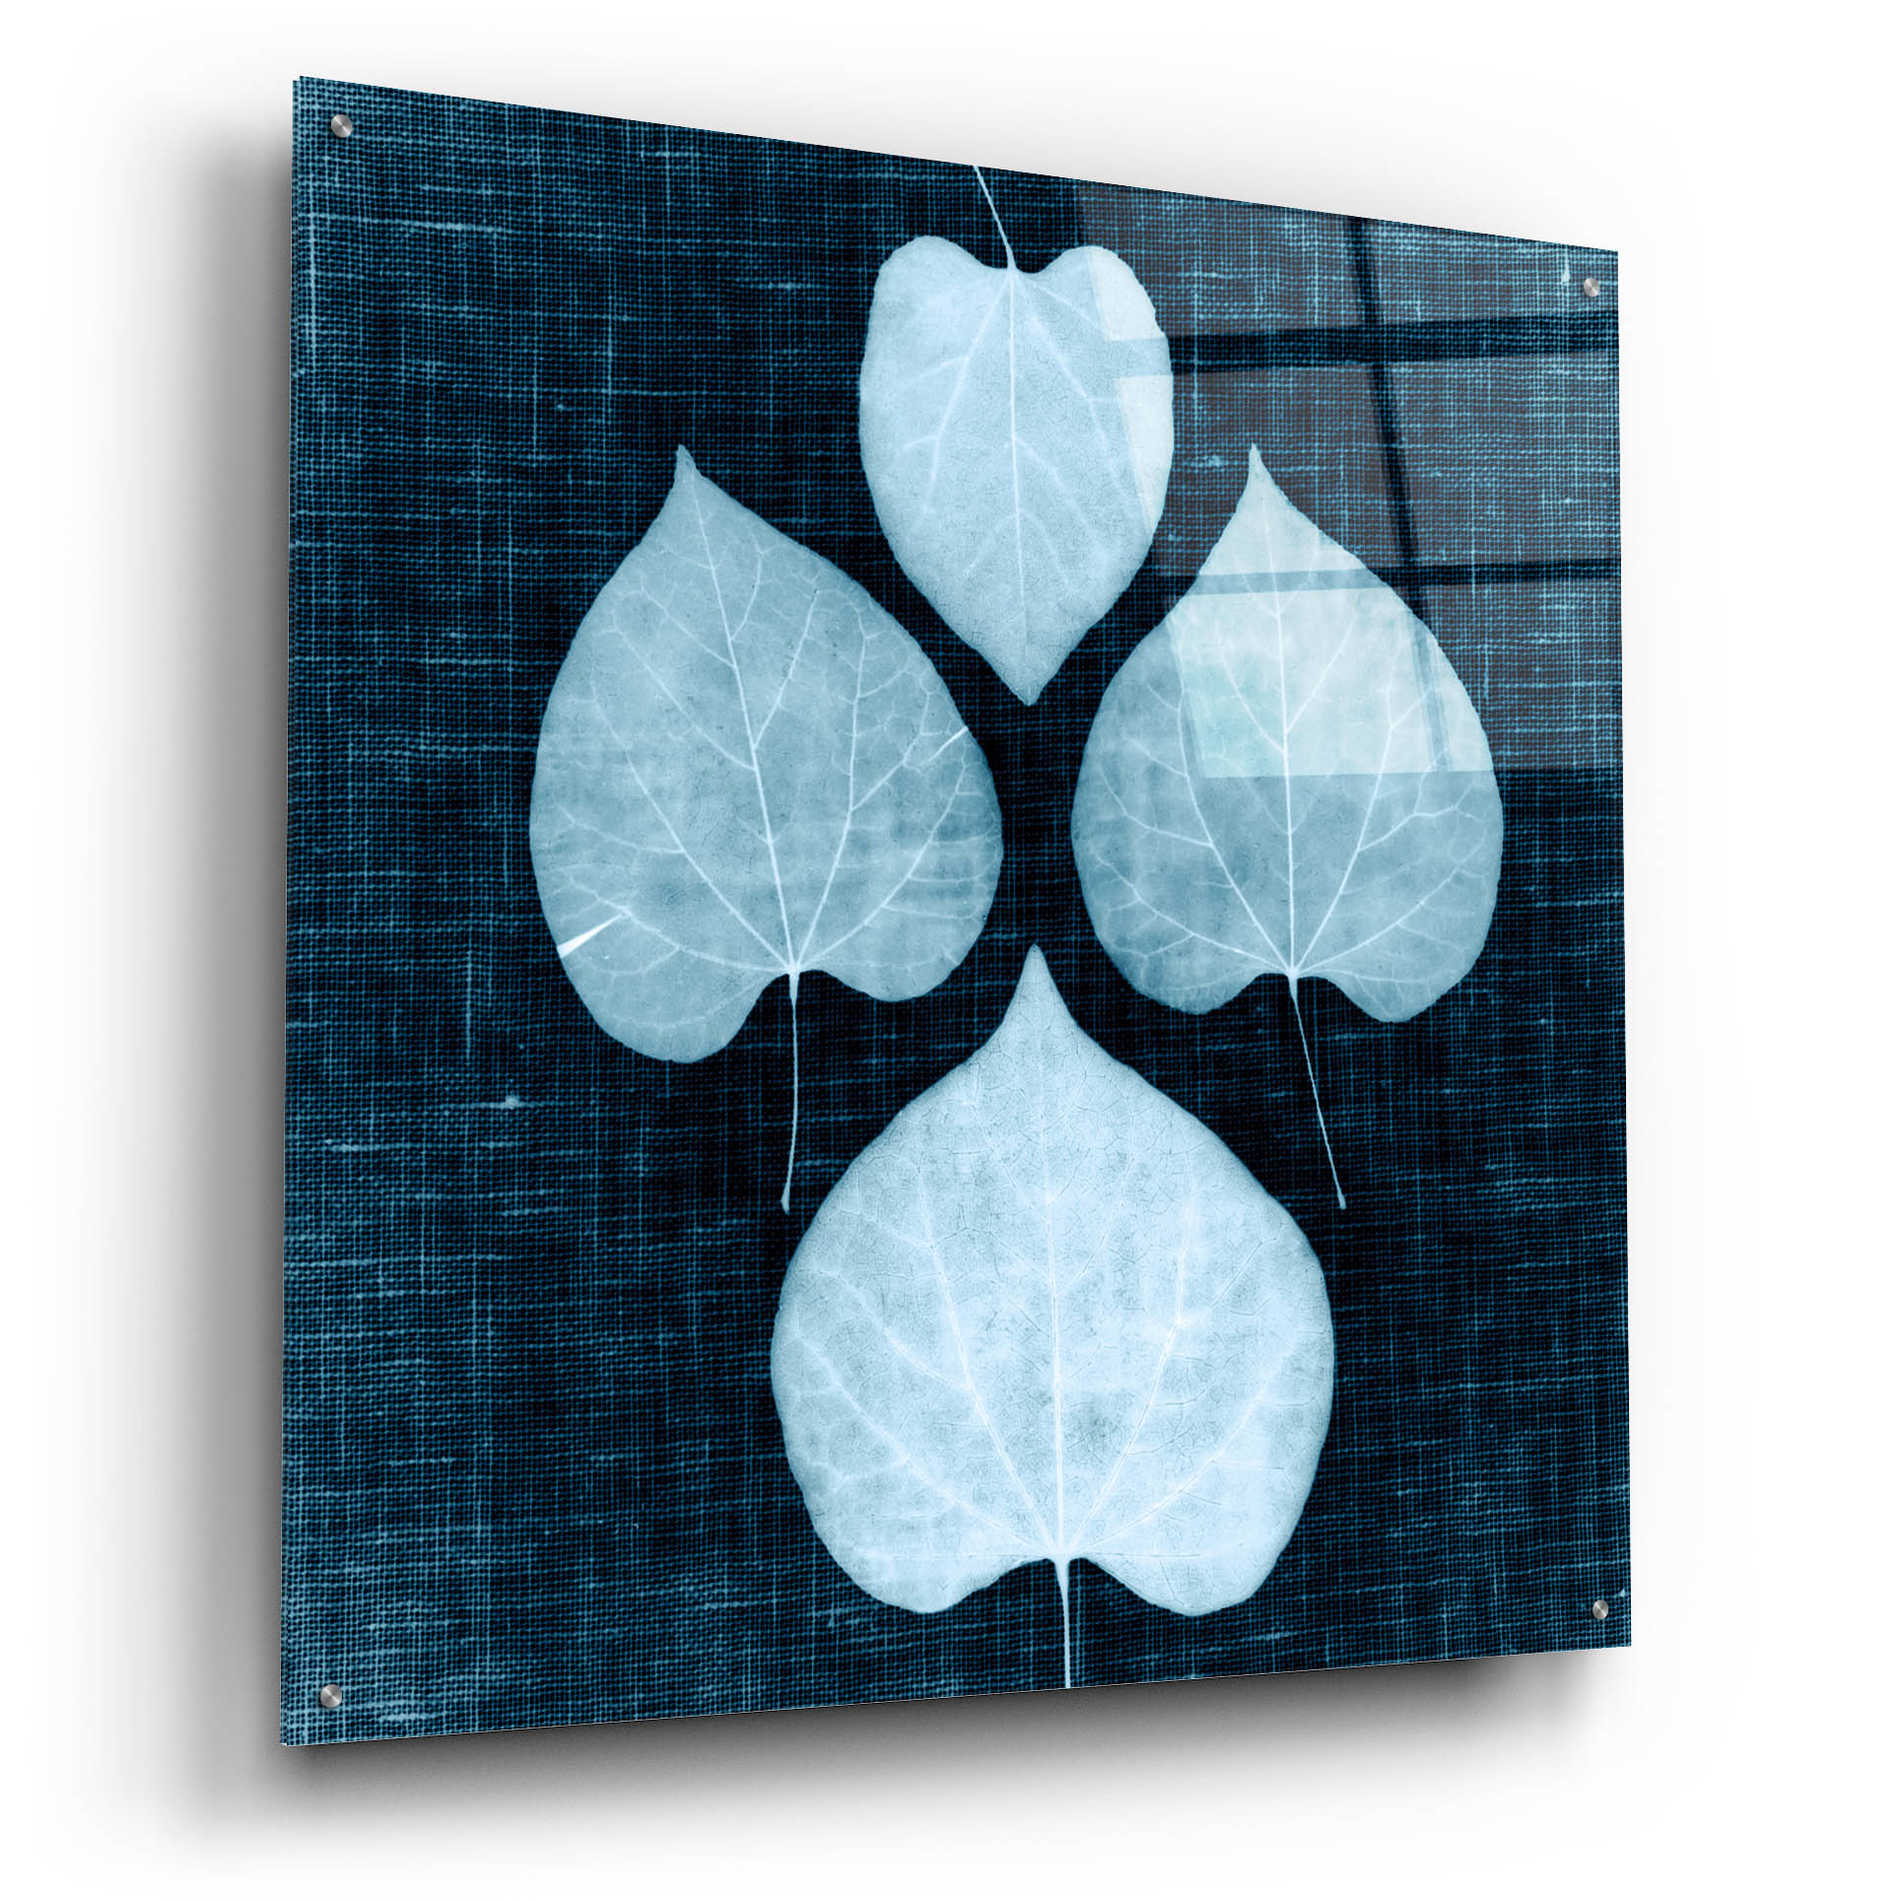 Epic Art 'Leaves on Linen IV' by Debra Van Swearingen, Acrylic Glass Wall Art,36x36